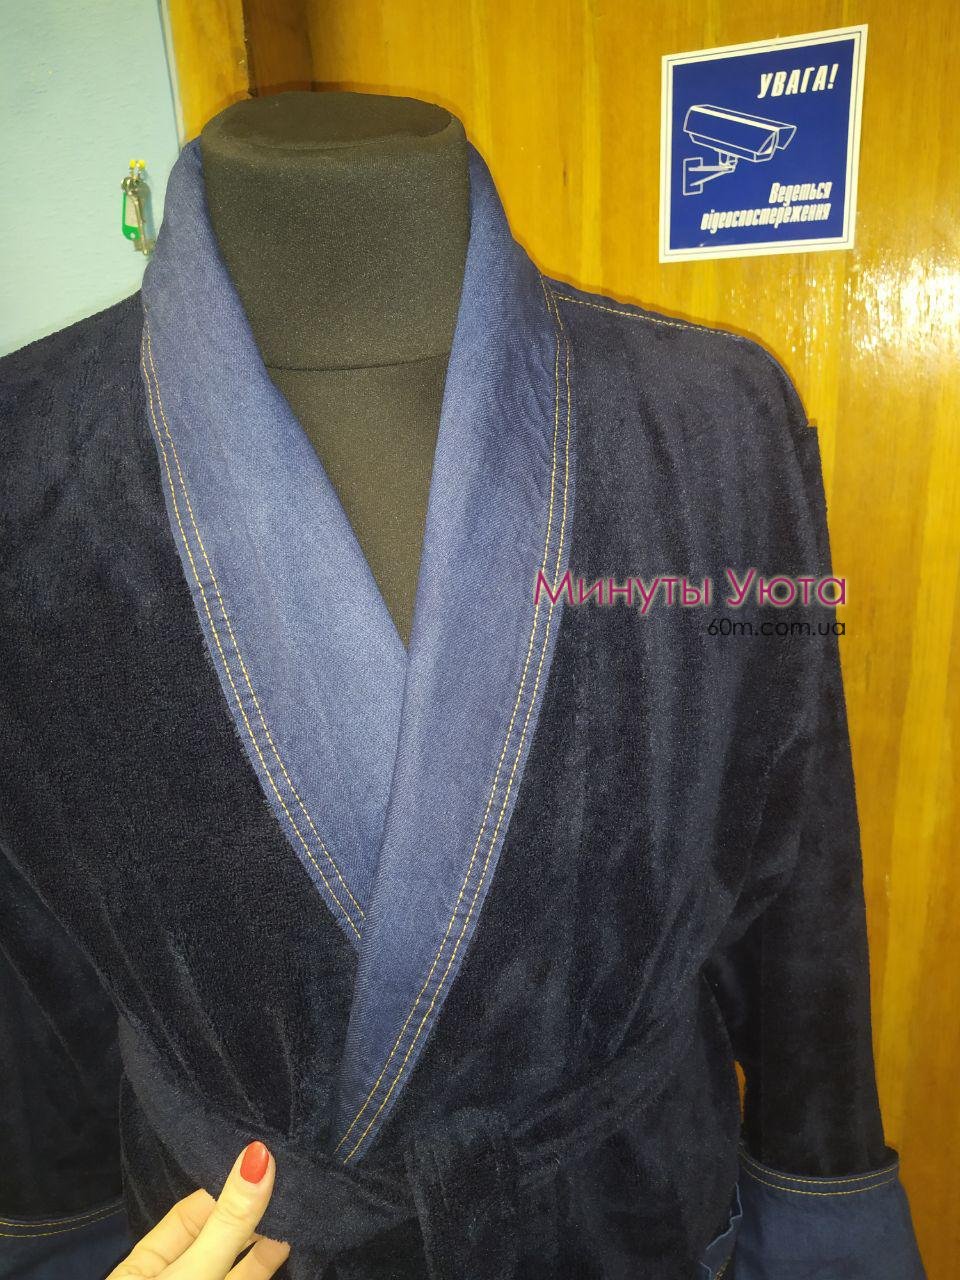 Мужской халат темно синего цвета с джинсовой расцветкой Nusa